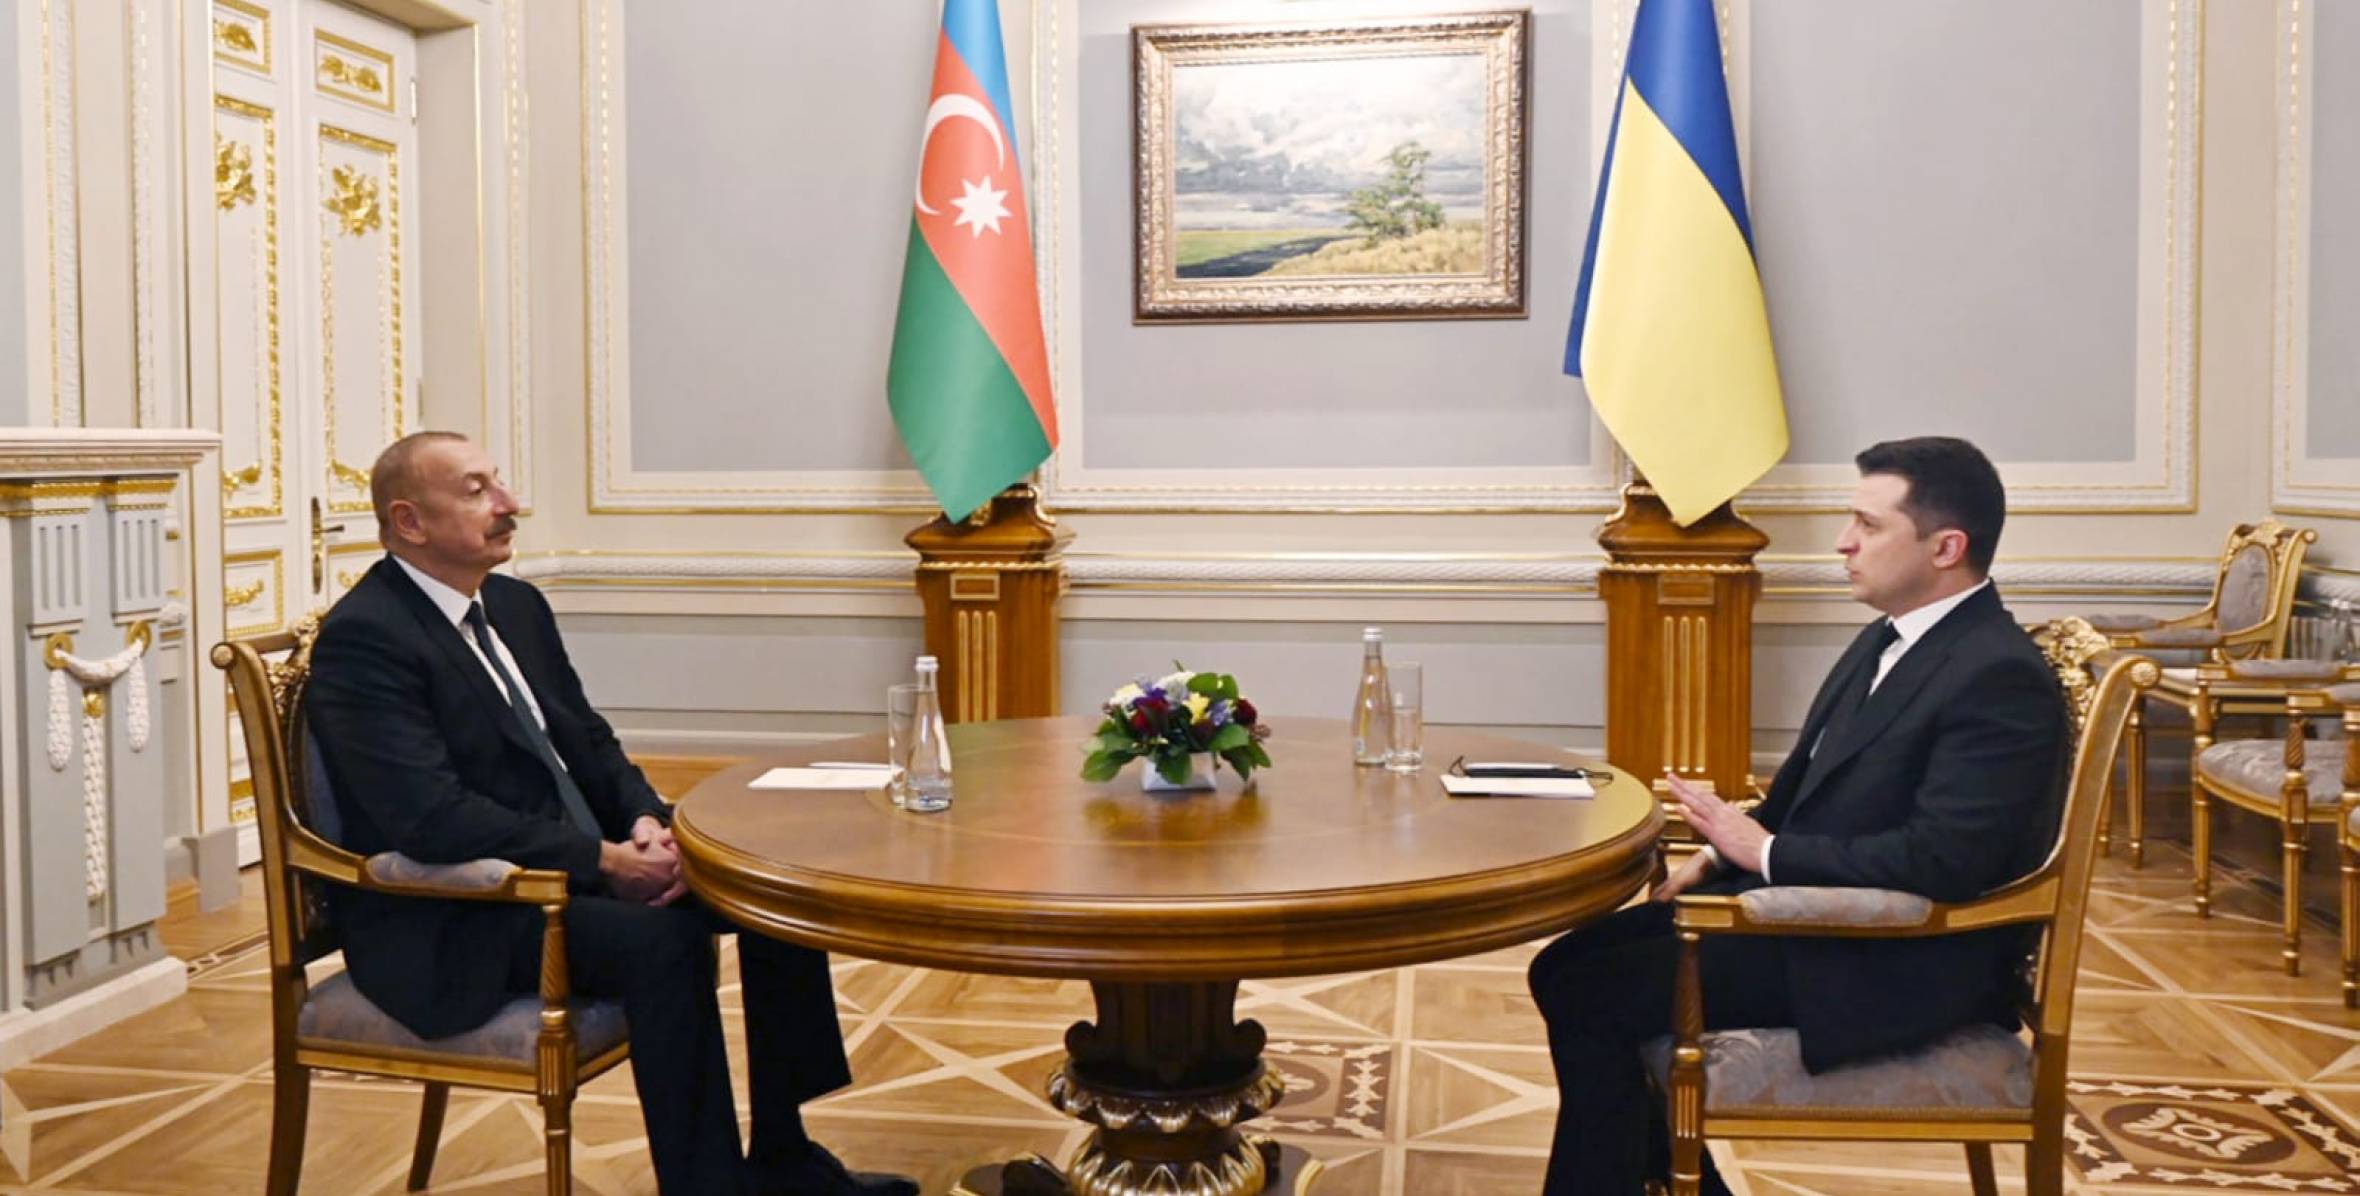 Bстреча Президента Азербайджана Ильхама Алиева с Президентом Украины Володимиром Зеленским один на один